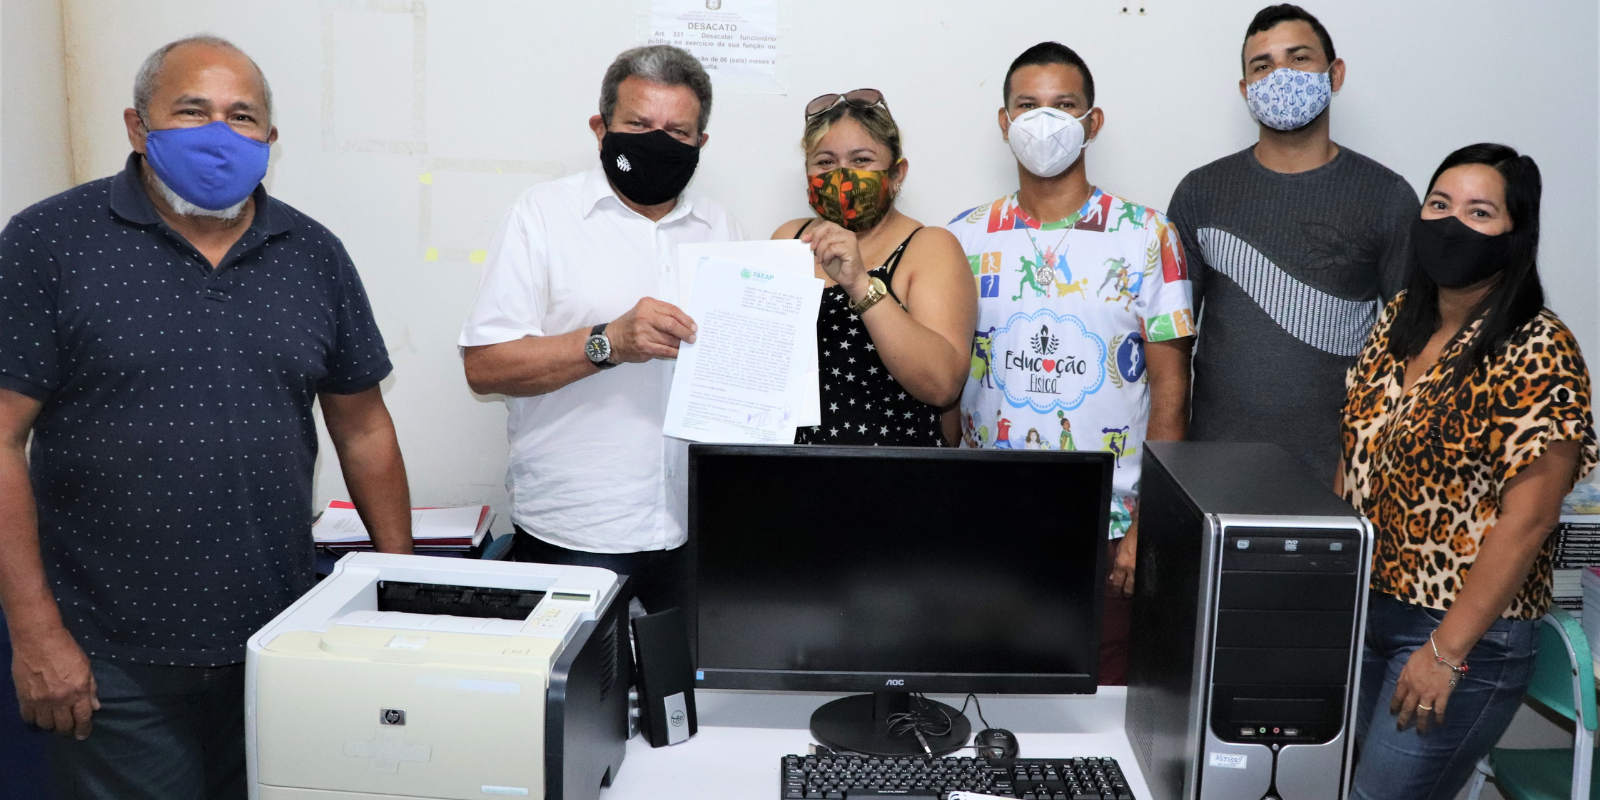 Faeap doa computador e equipamentos de informática para escola estadual do município de Pracuúba